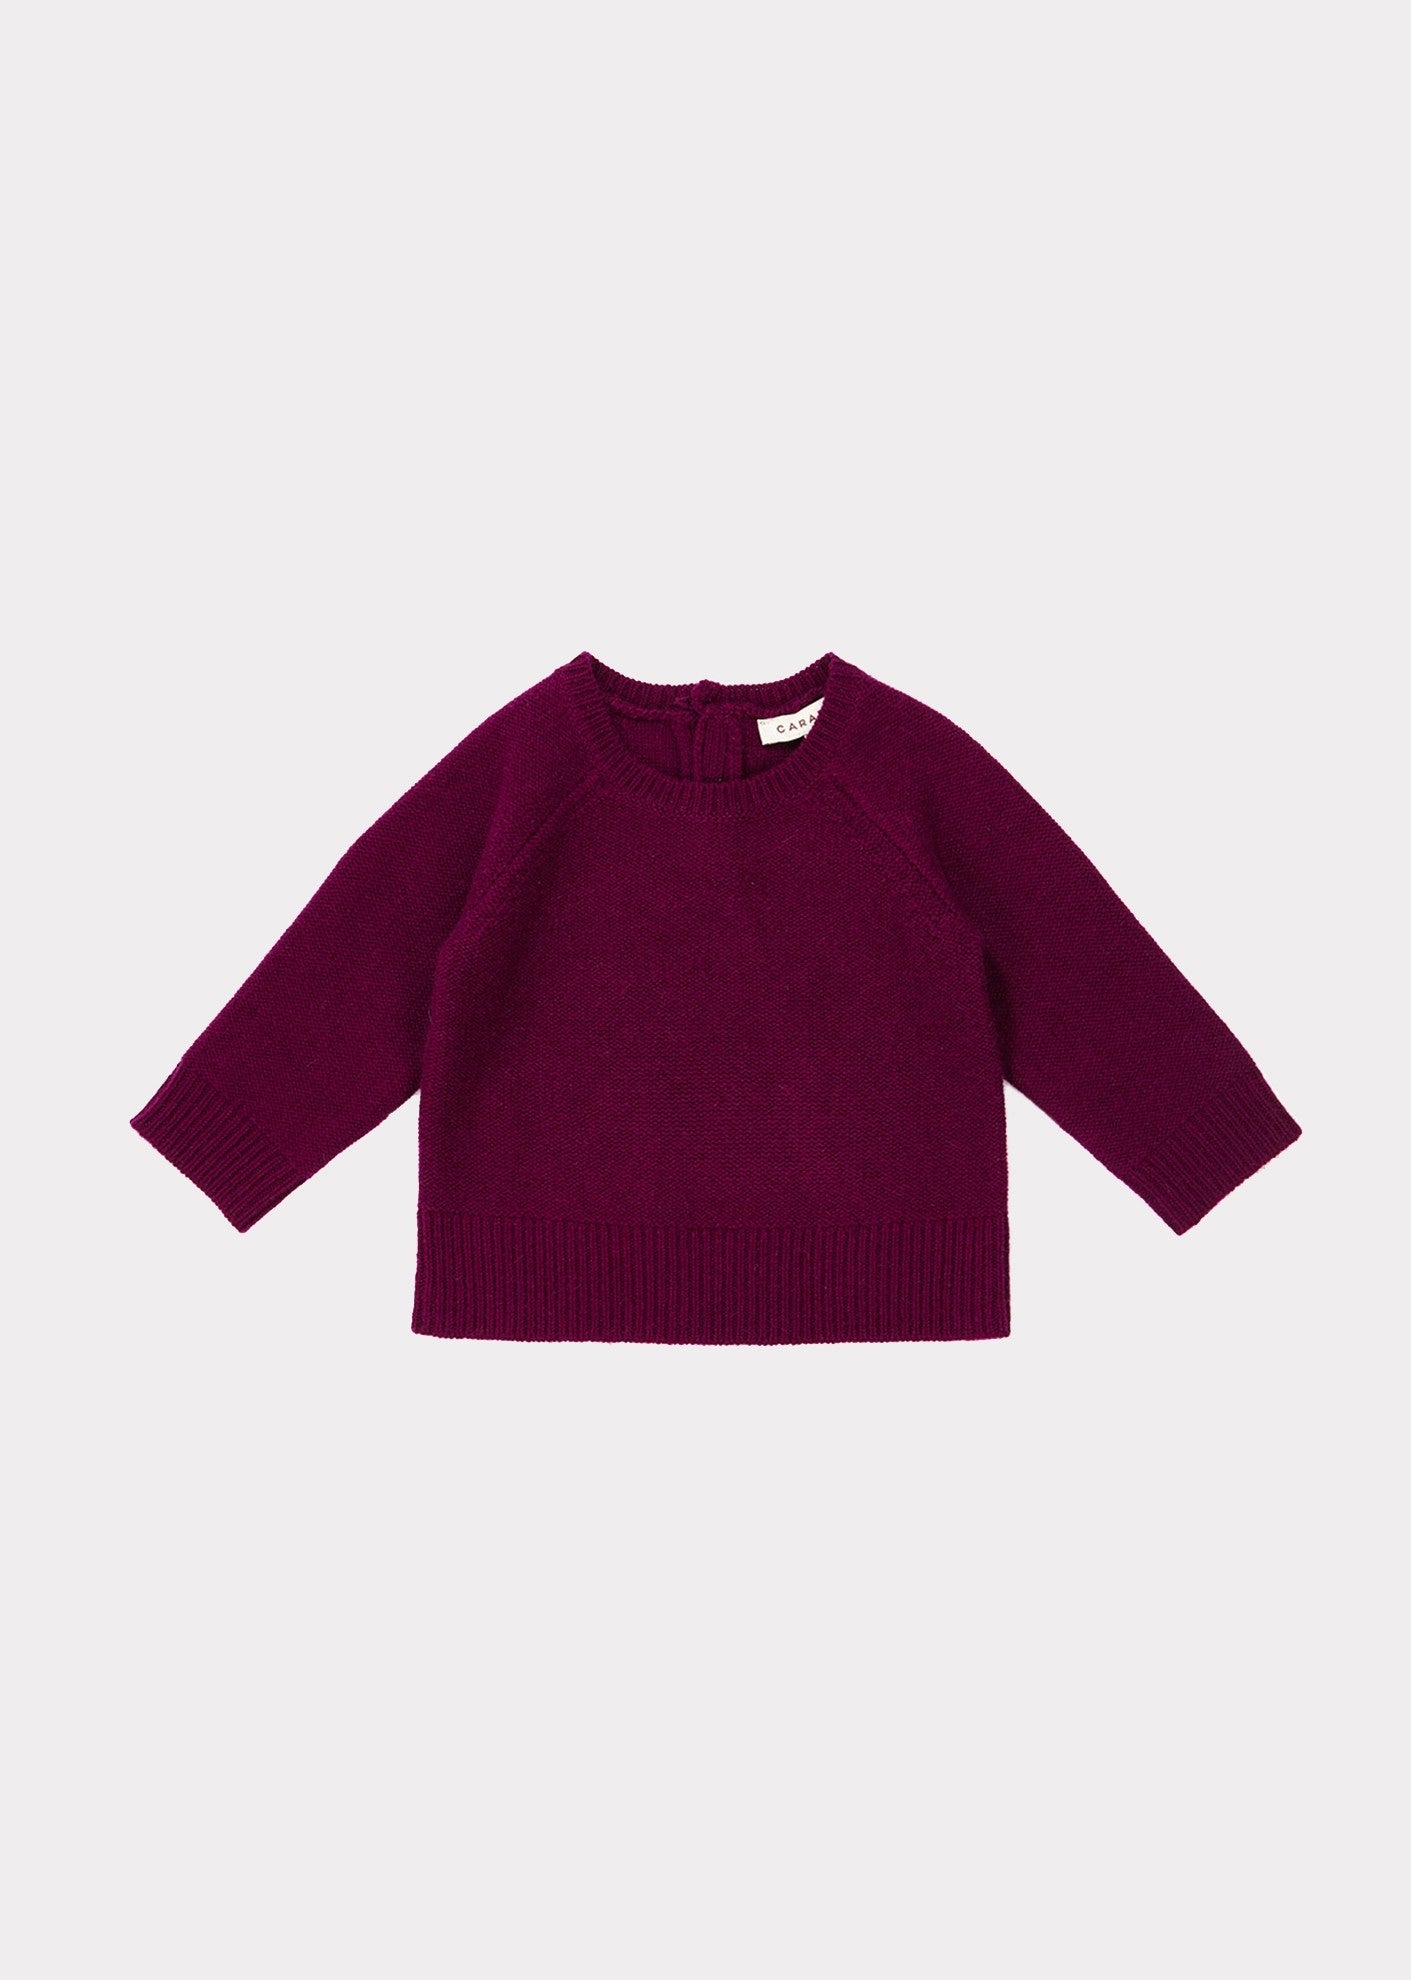 Baby Girls Dark Red Cashmere Sweater